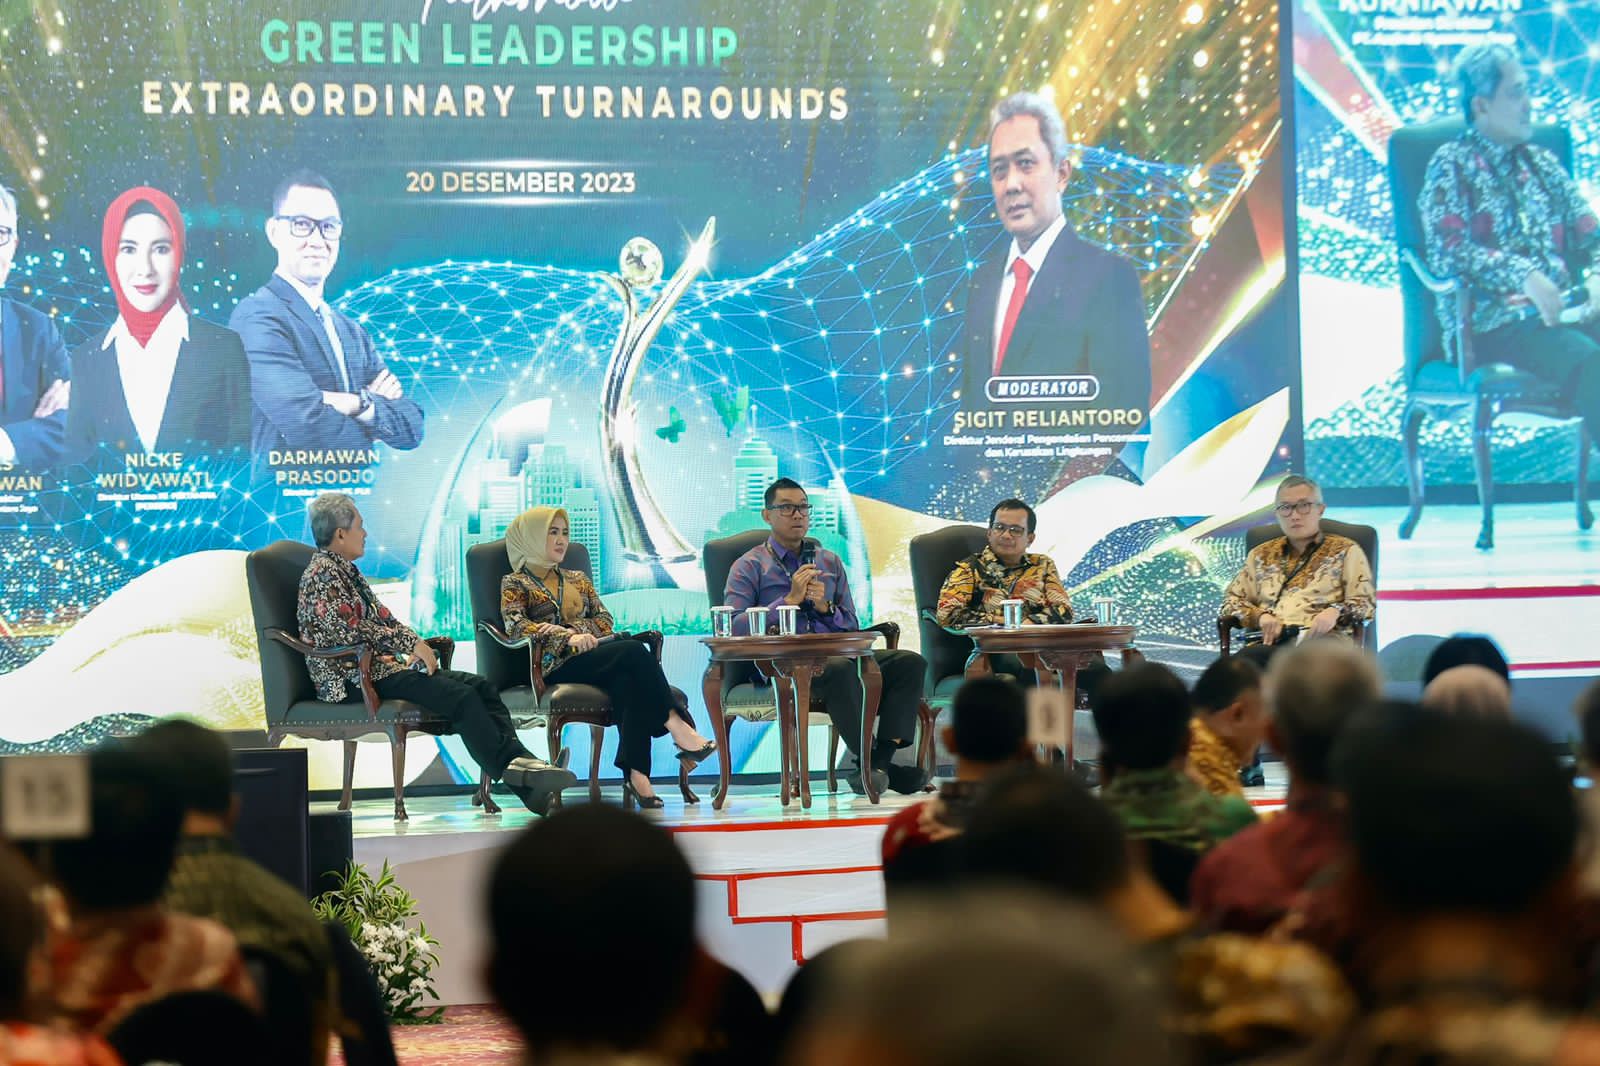 Direktur Utama PLN, Darmawan Prasodjo (tengah) menjadi narasumber pada talkshow Green Leadership Extraordinary Turnarounds yang diselenggarakan Kementerian Lingkungan Hidup dan Kehutanan, Rabu (20/12).